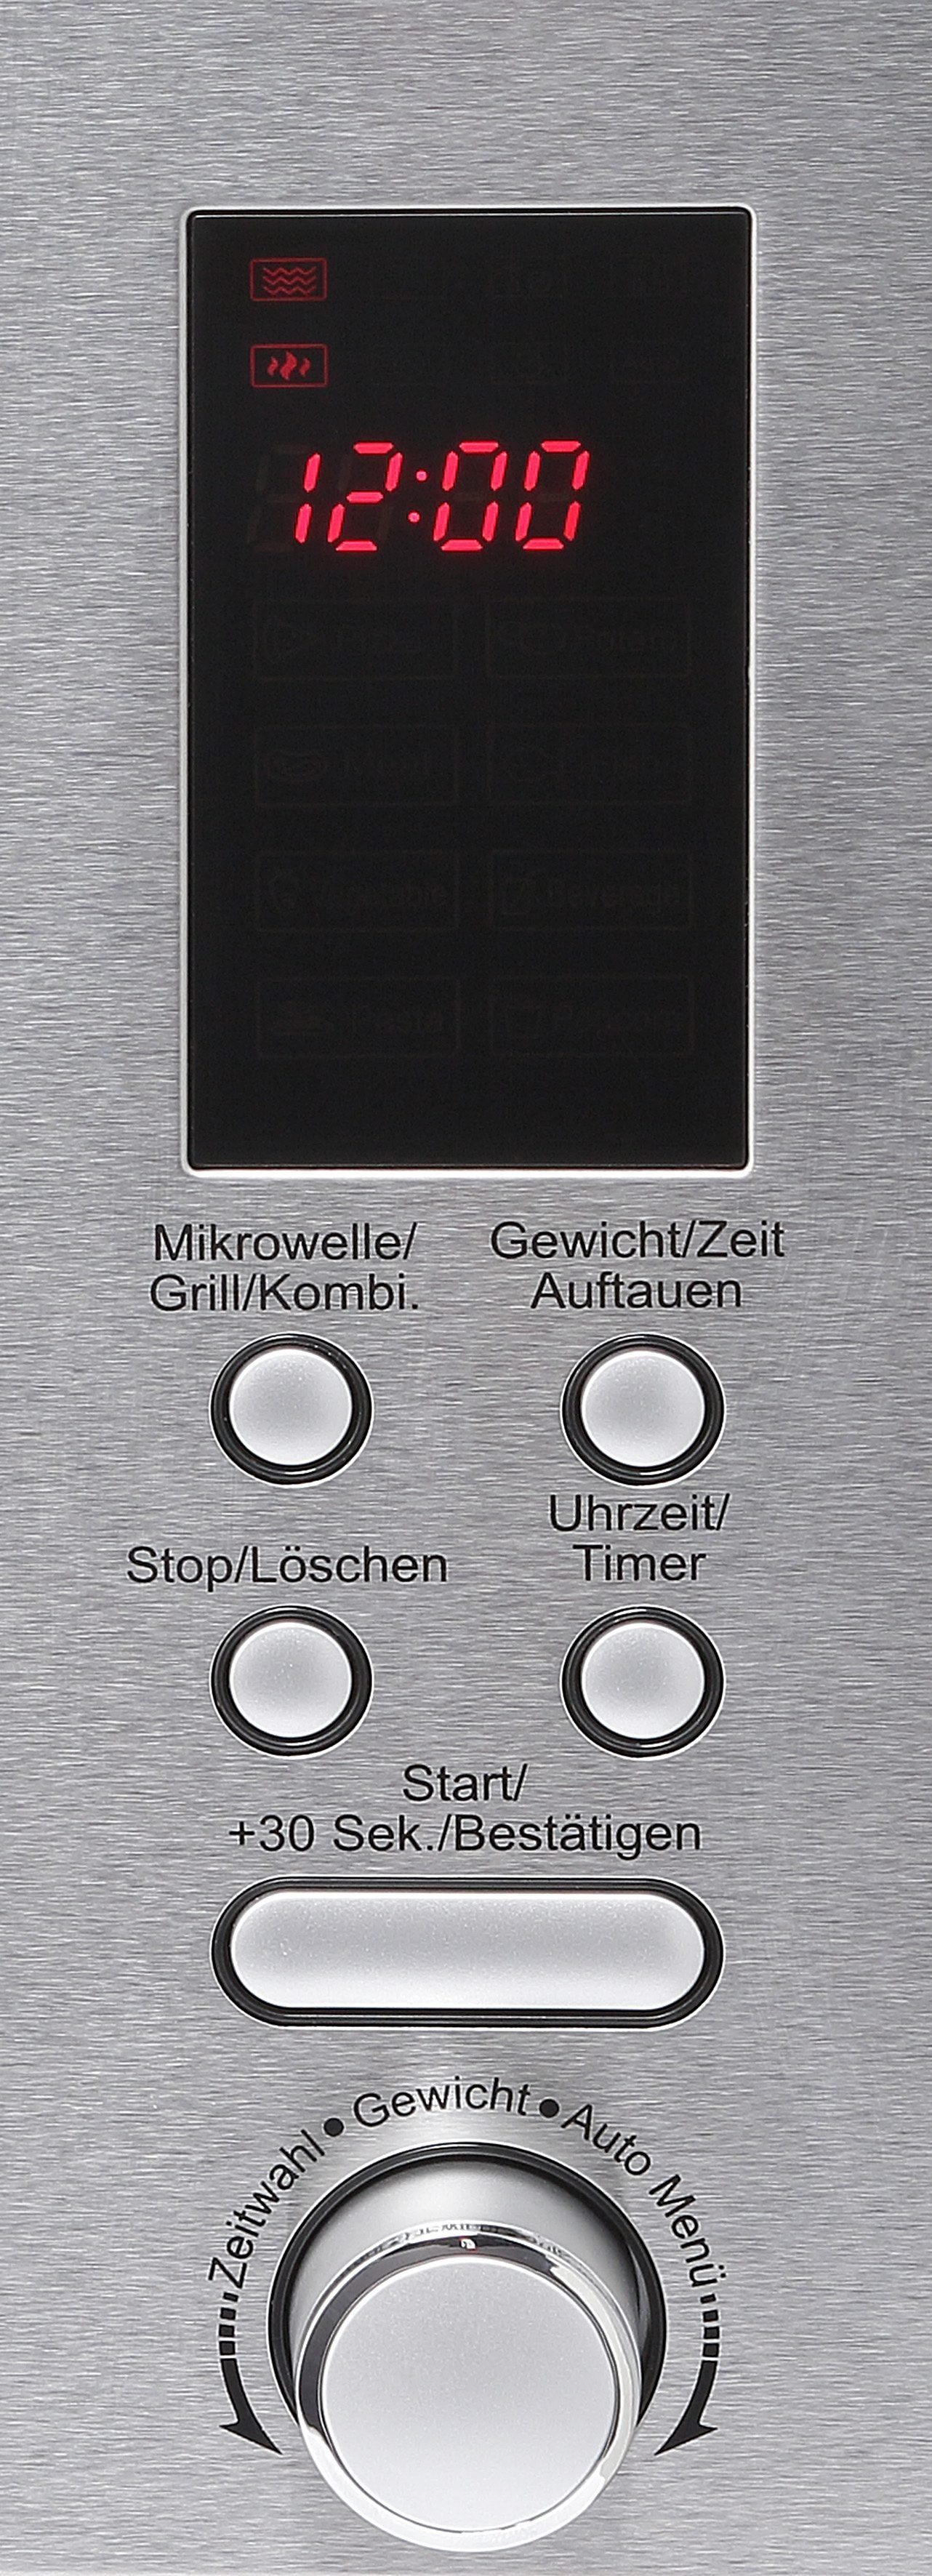 Hanseatic Einbau-Mikrowelle Mikrowelle AB820BVX-S0EE